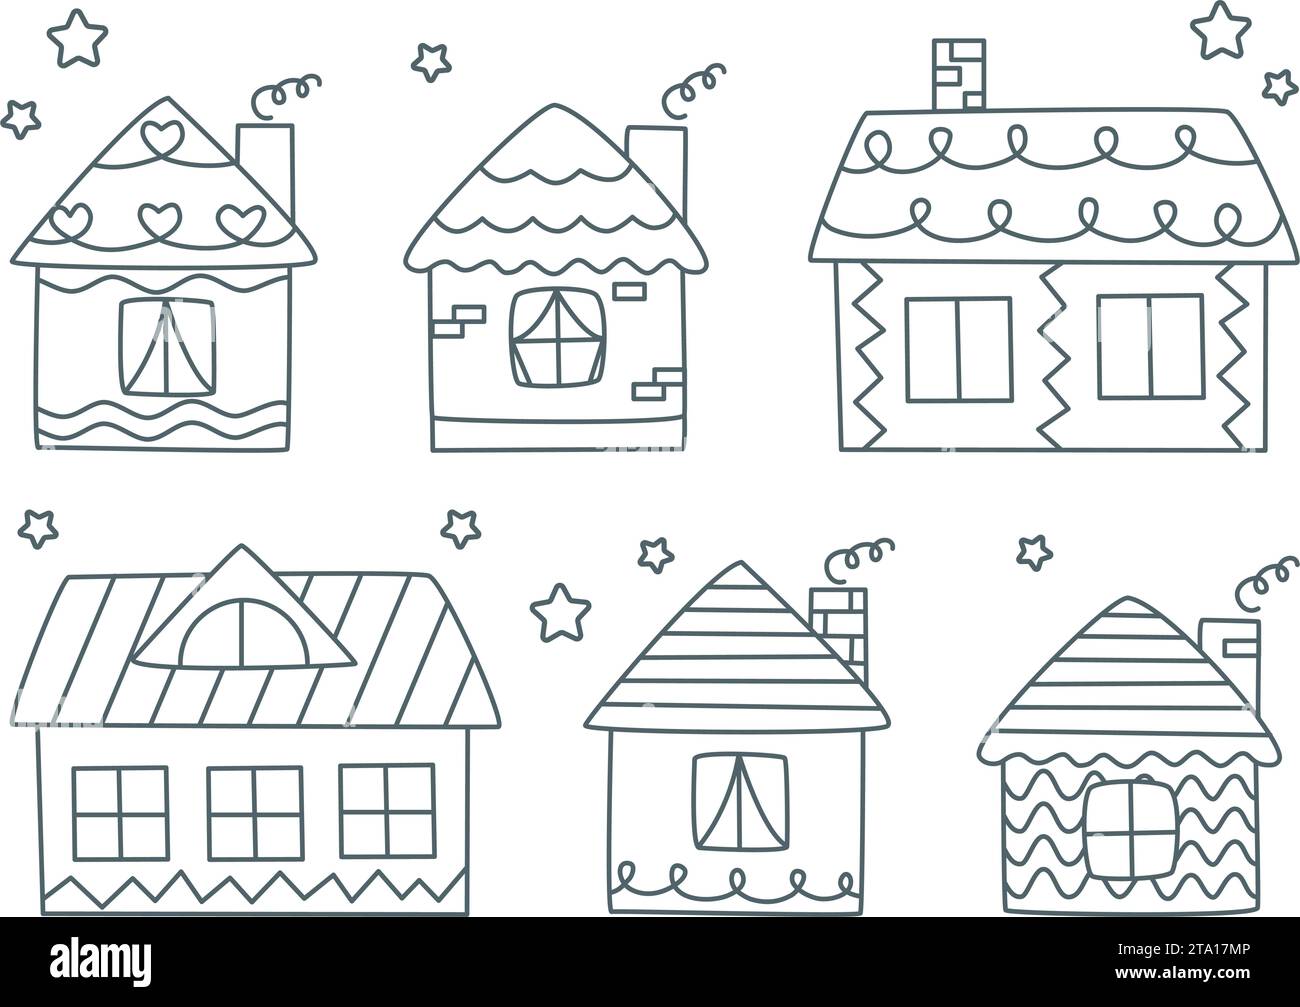 Doodle Houses Set illustration vectorielle. Mignons cottages dessinés à la main pour les familles. Contour d'encre simple de bâtiment résidentiel rural isolé sur blanc Illustration de Vecteur